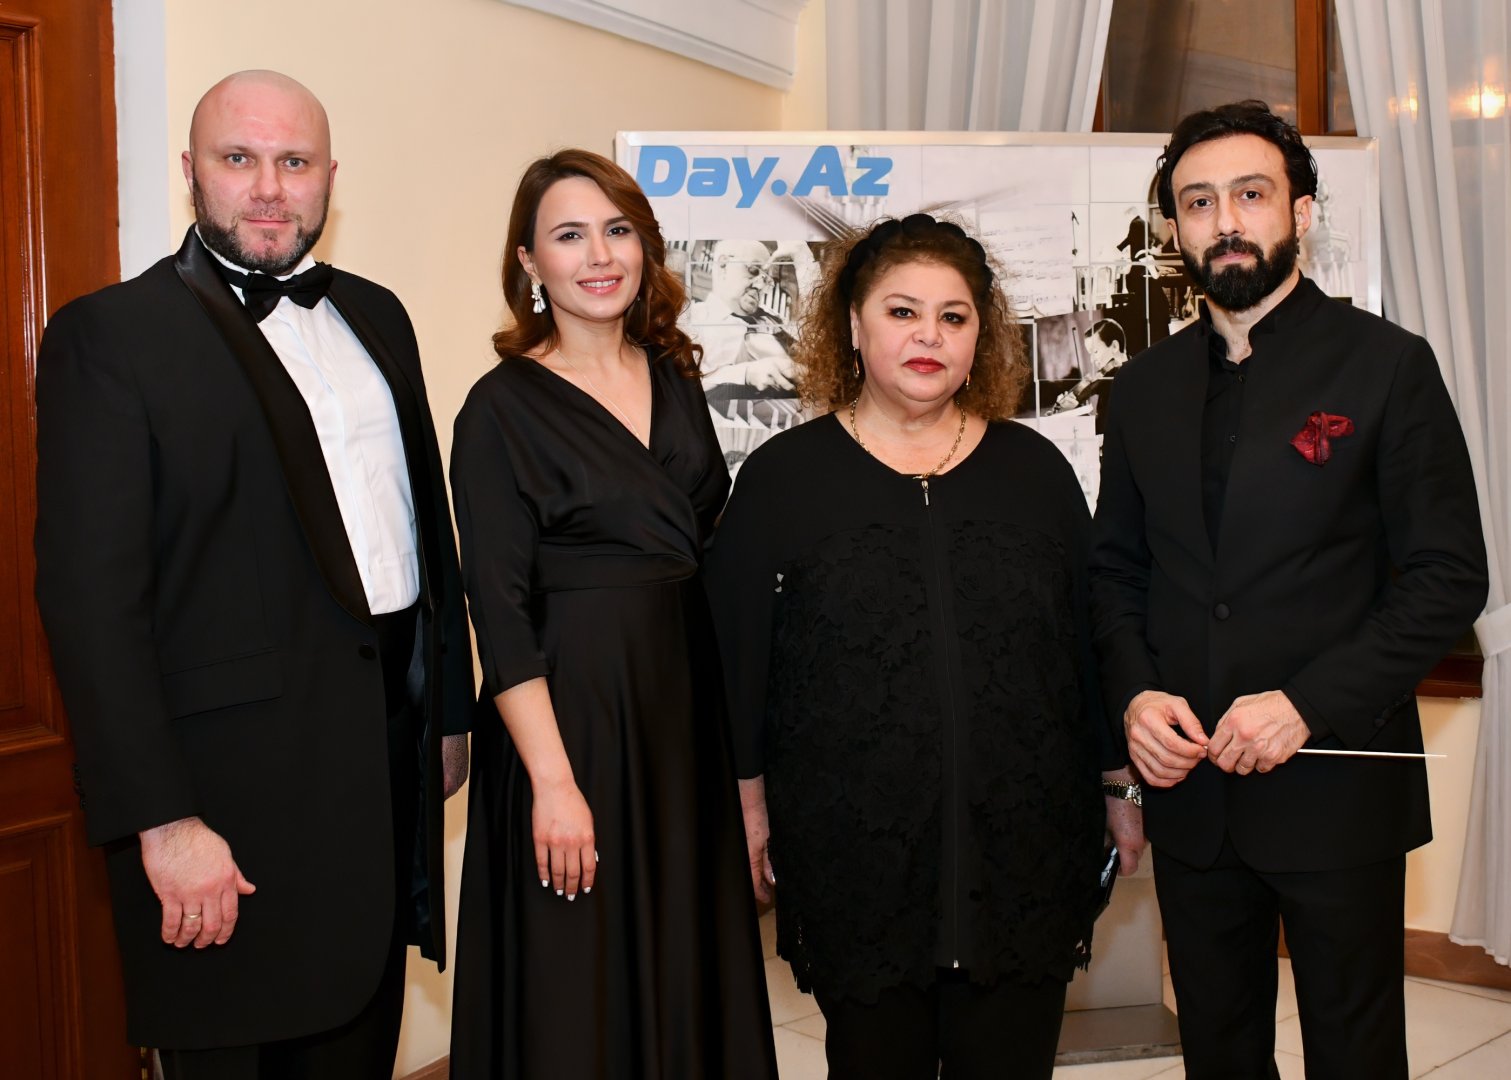 В Бакинской филармонии прошел вечер памяти жертв трагедии 20 Января (ФОТО)